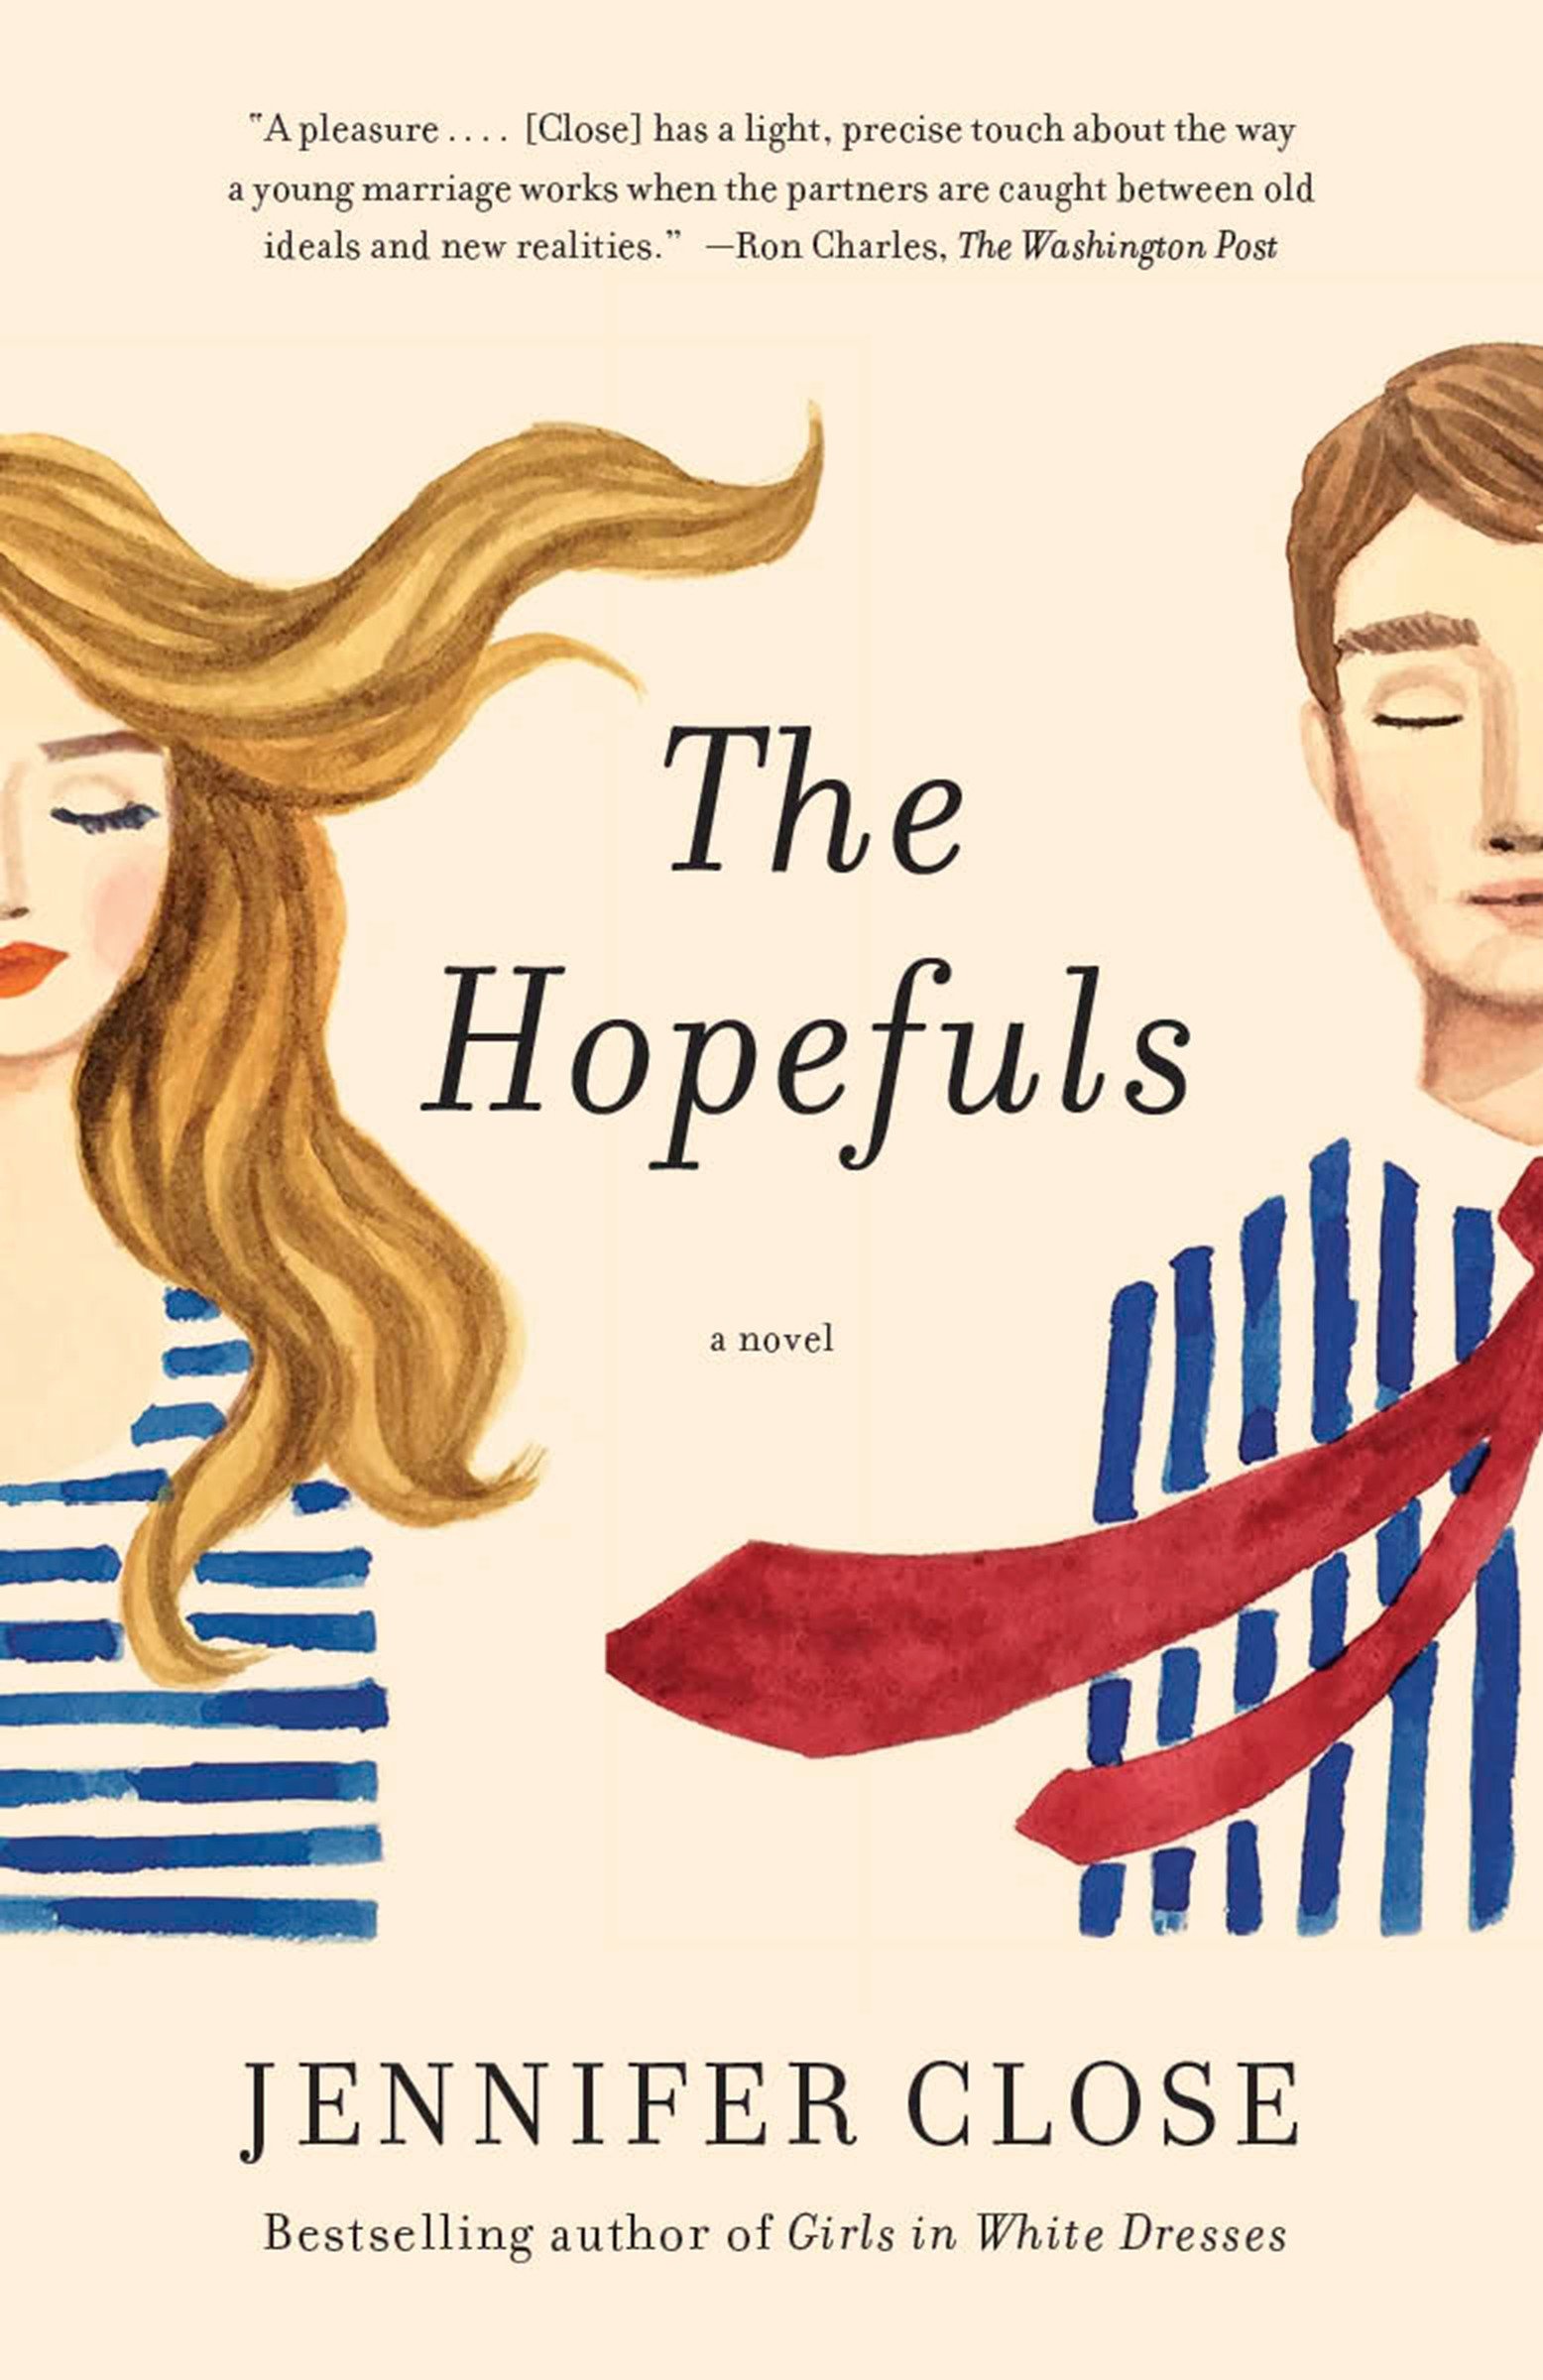 The hopefuls cover image